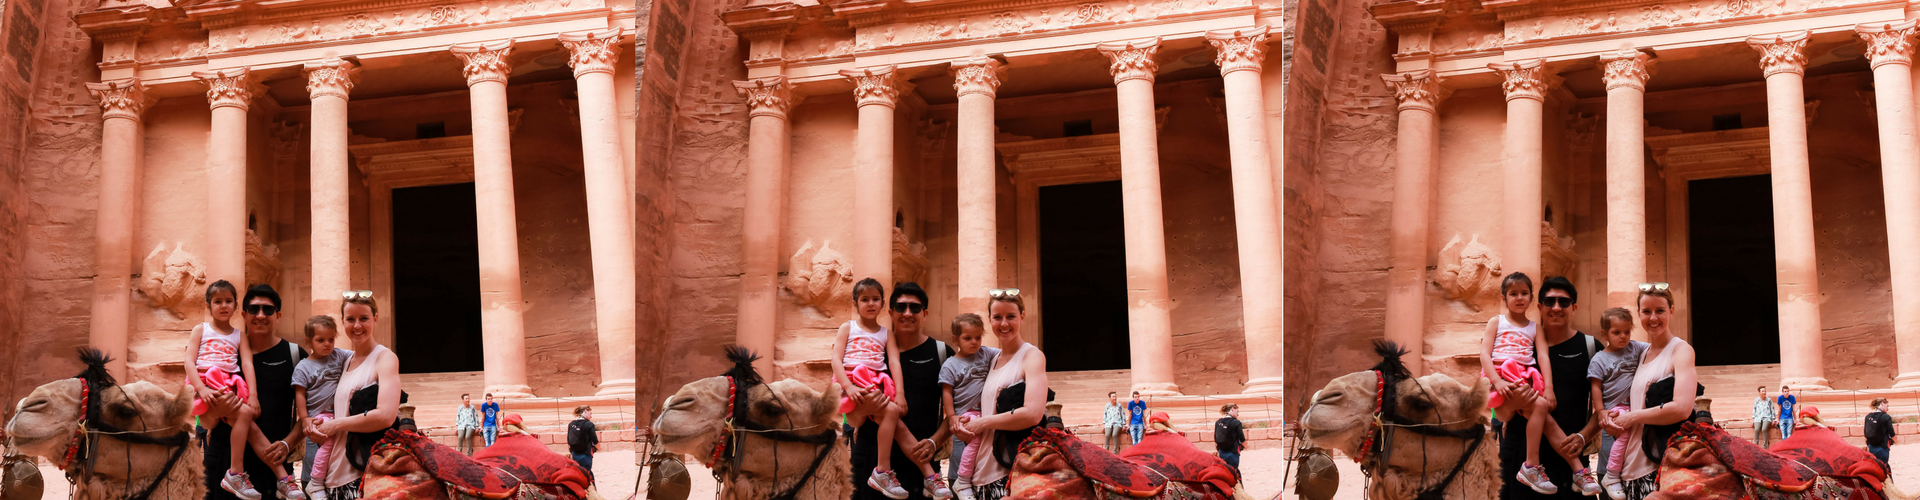 Haute Travels: Petra, Jordan